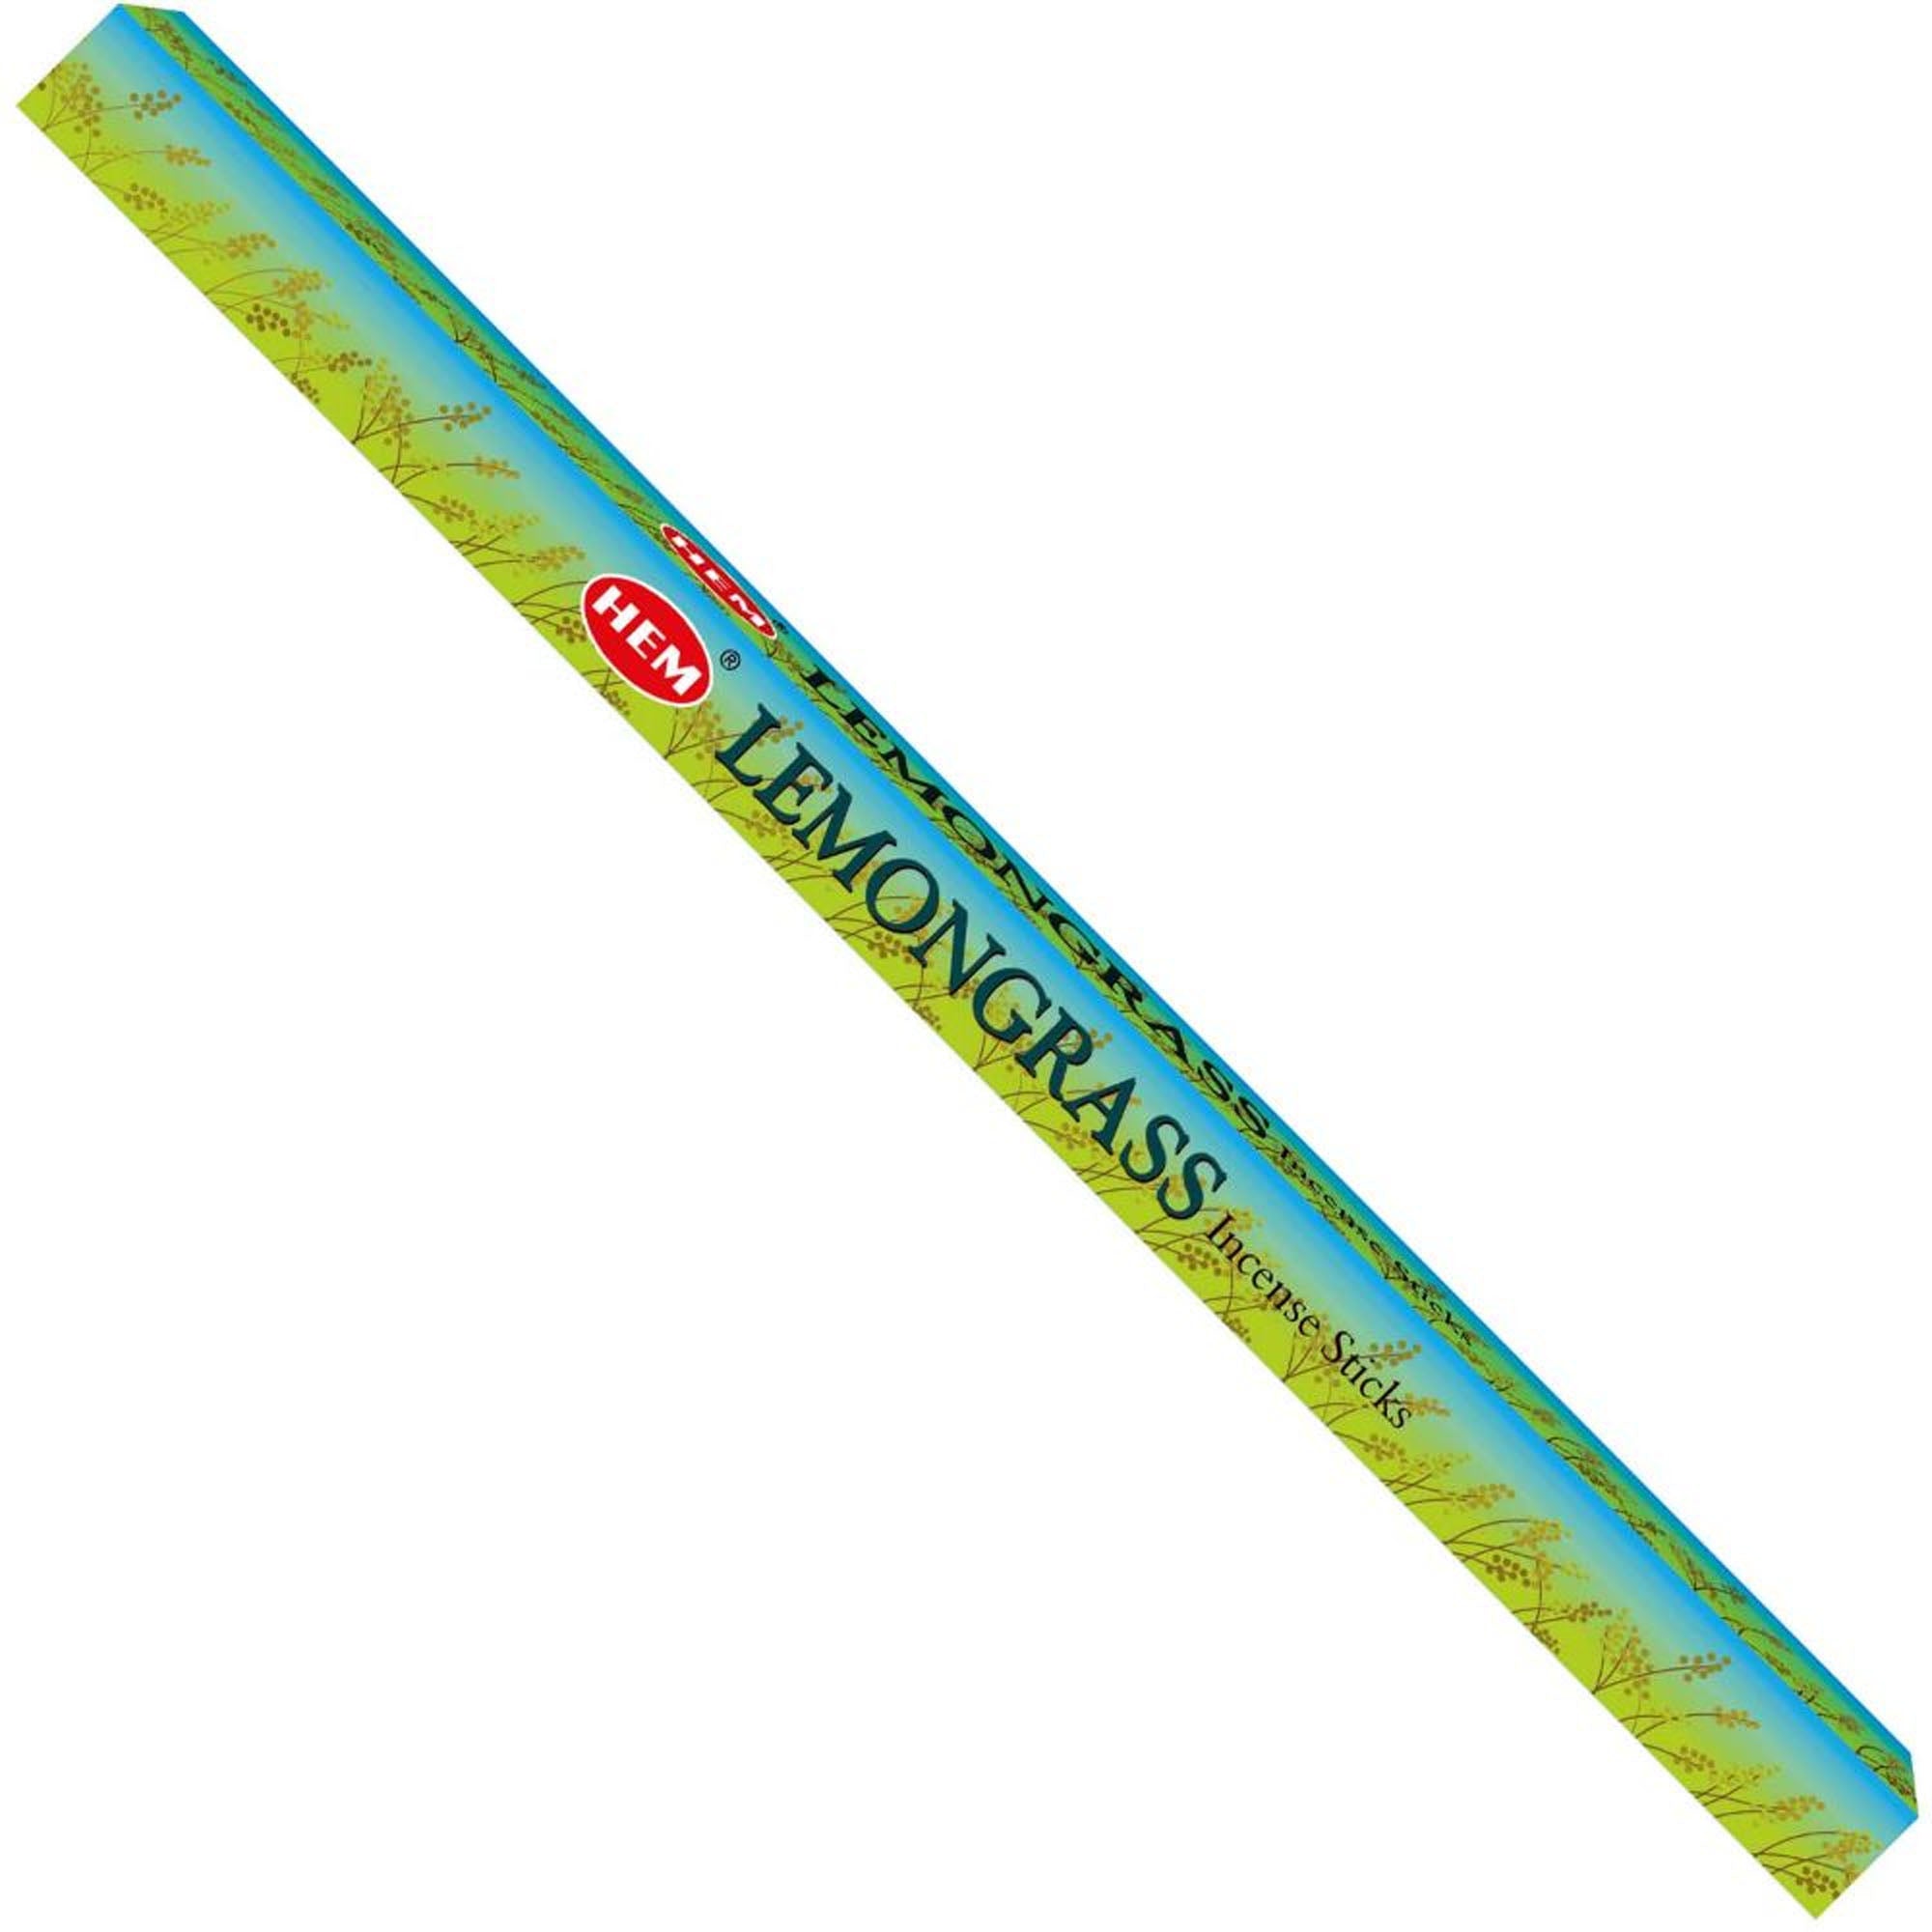 Hem - Square Incense - Lemongrass Incense Sticks